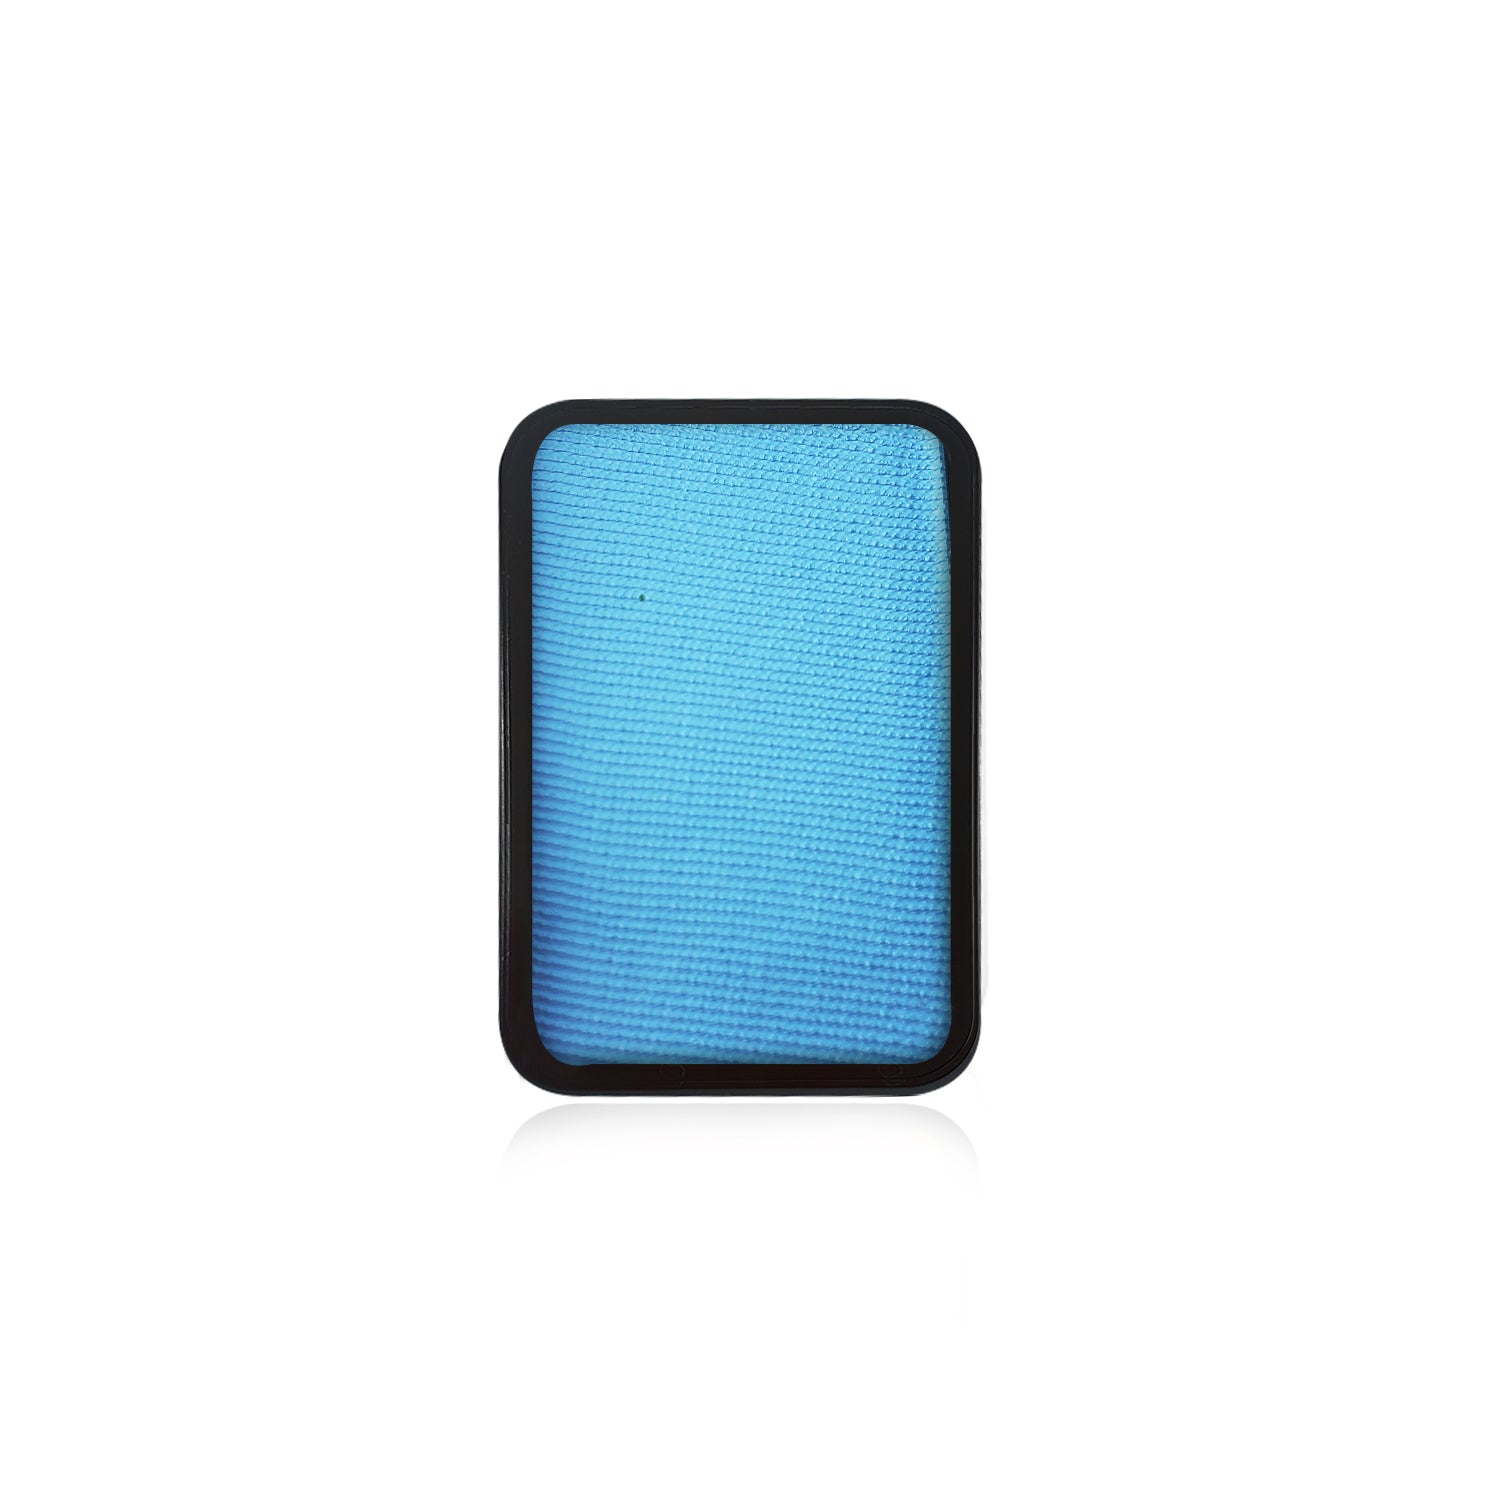 Kraze Face Paint Palette Refill - Light Blue (0.35 oz/10 gm)